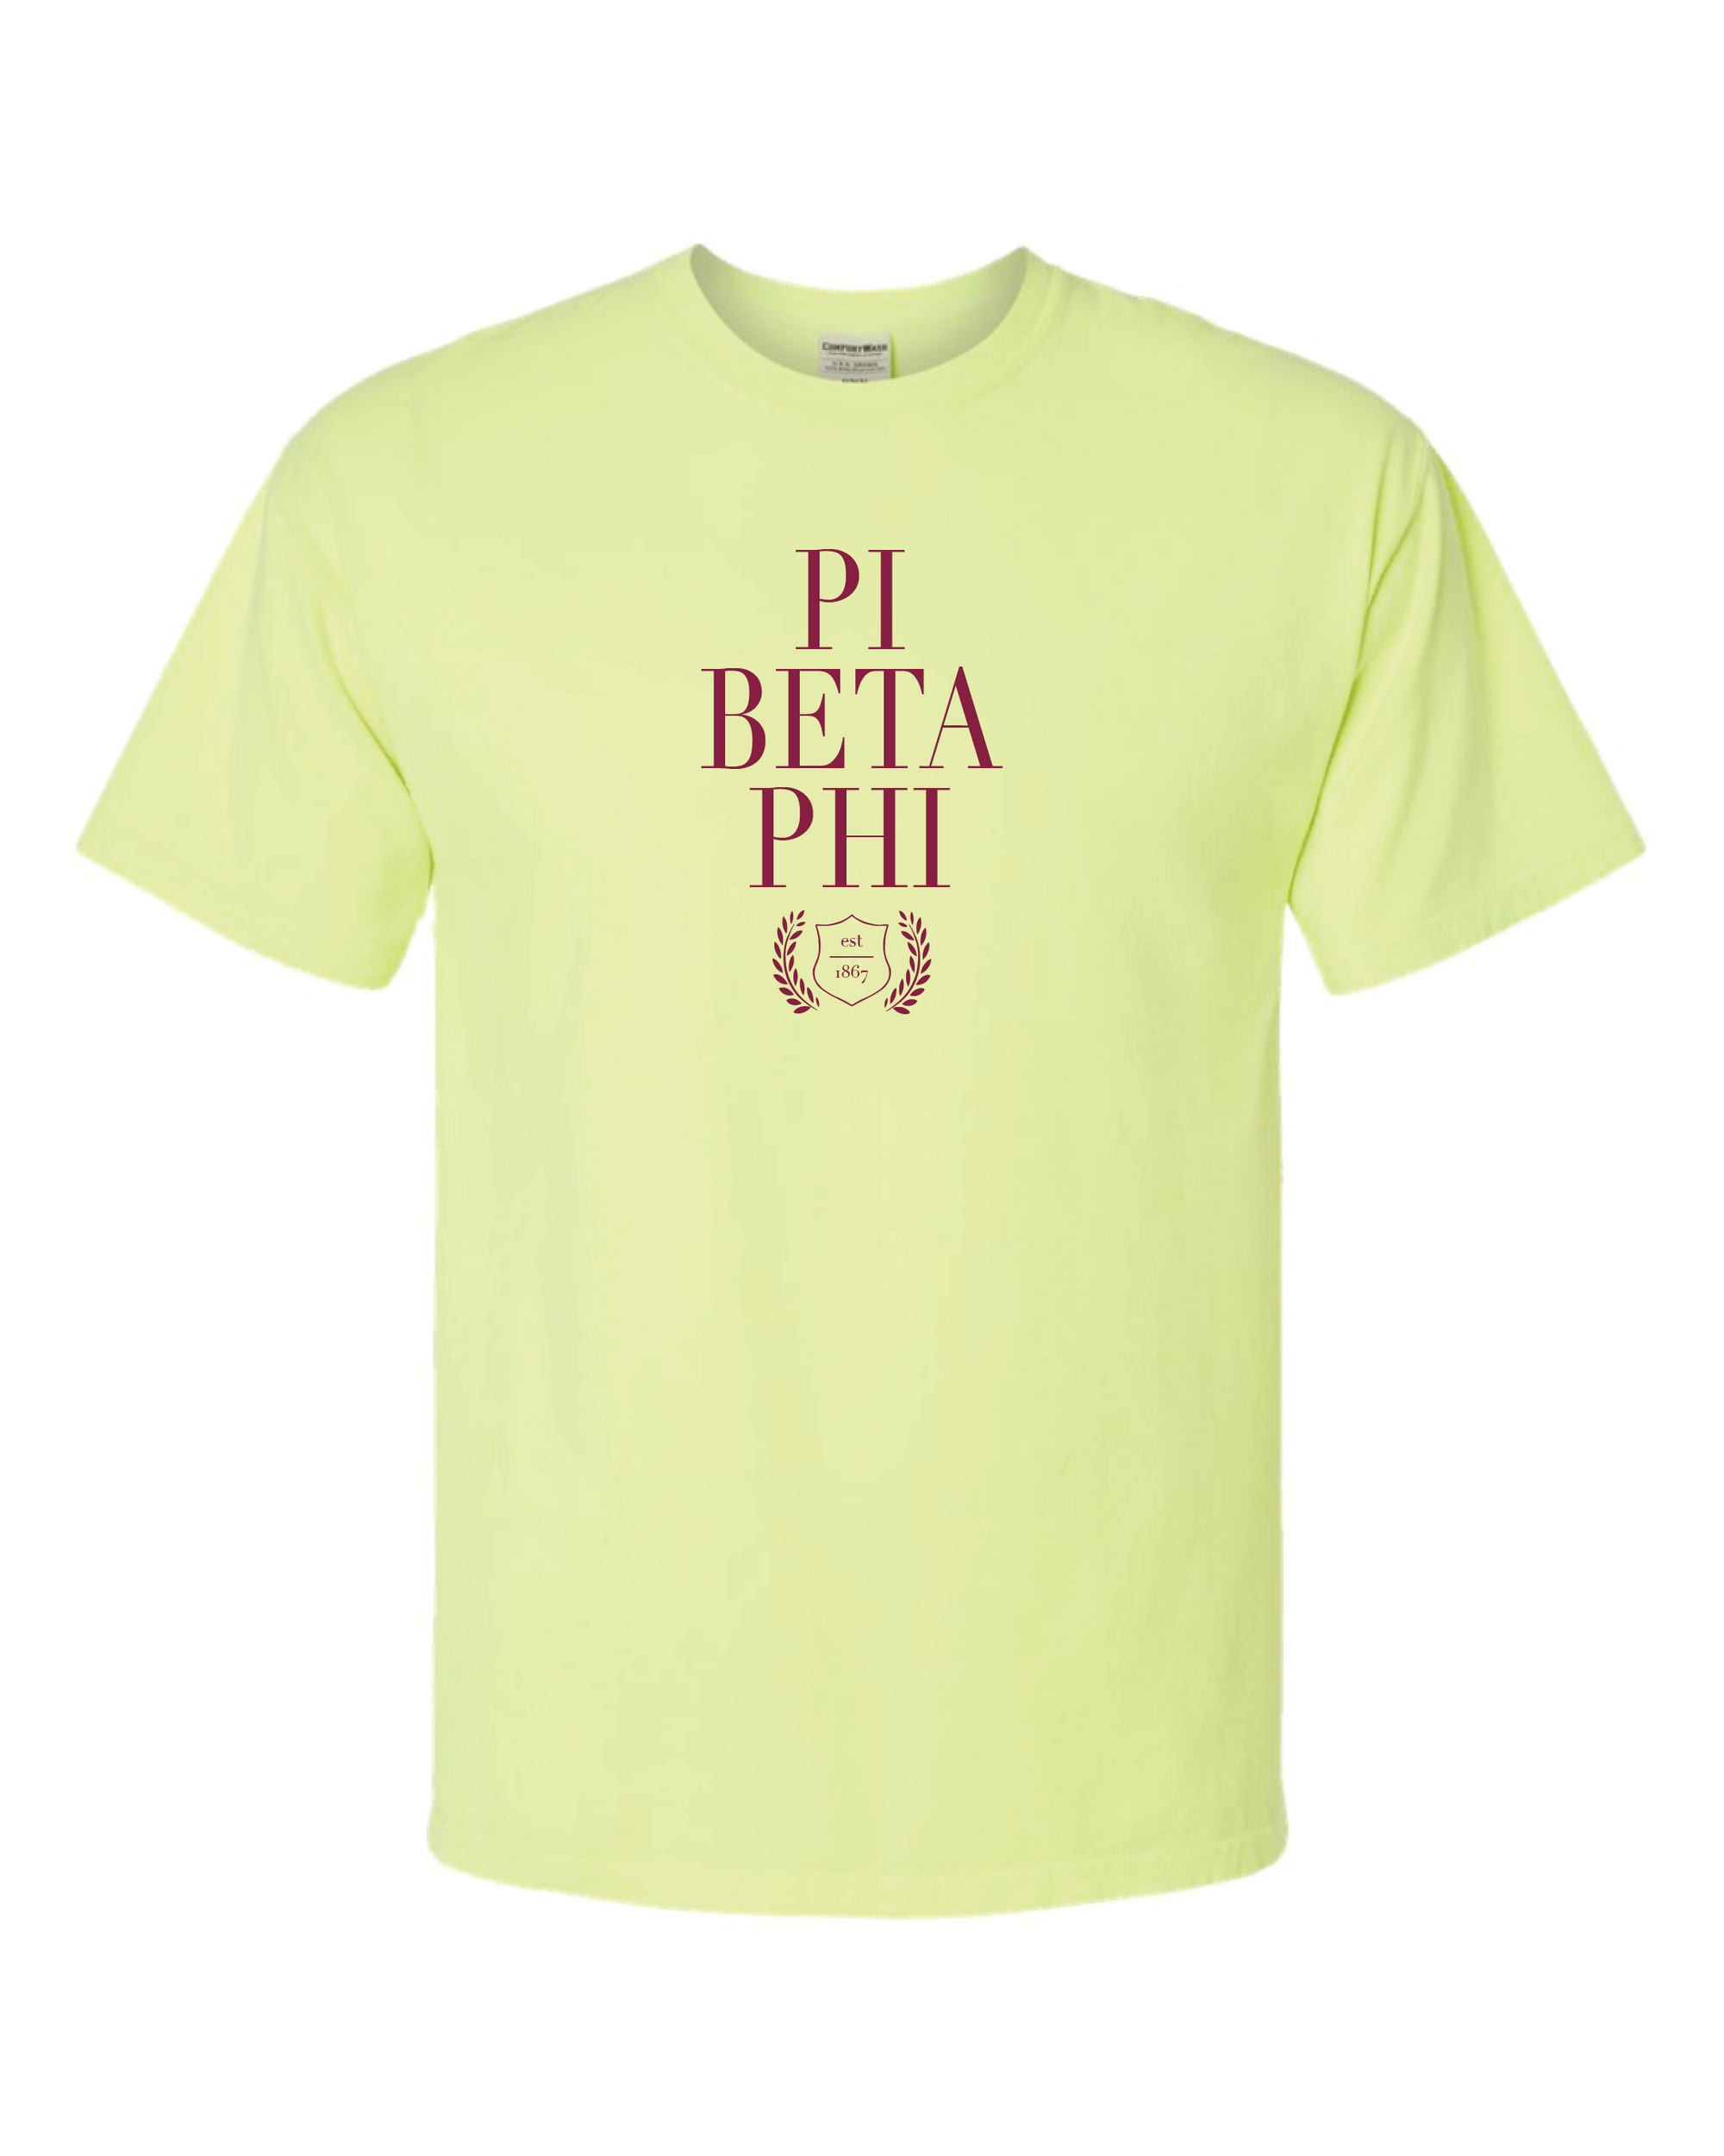 Pi Phi Classic tee